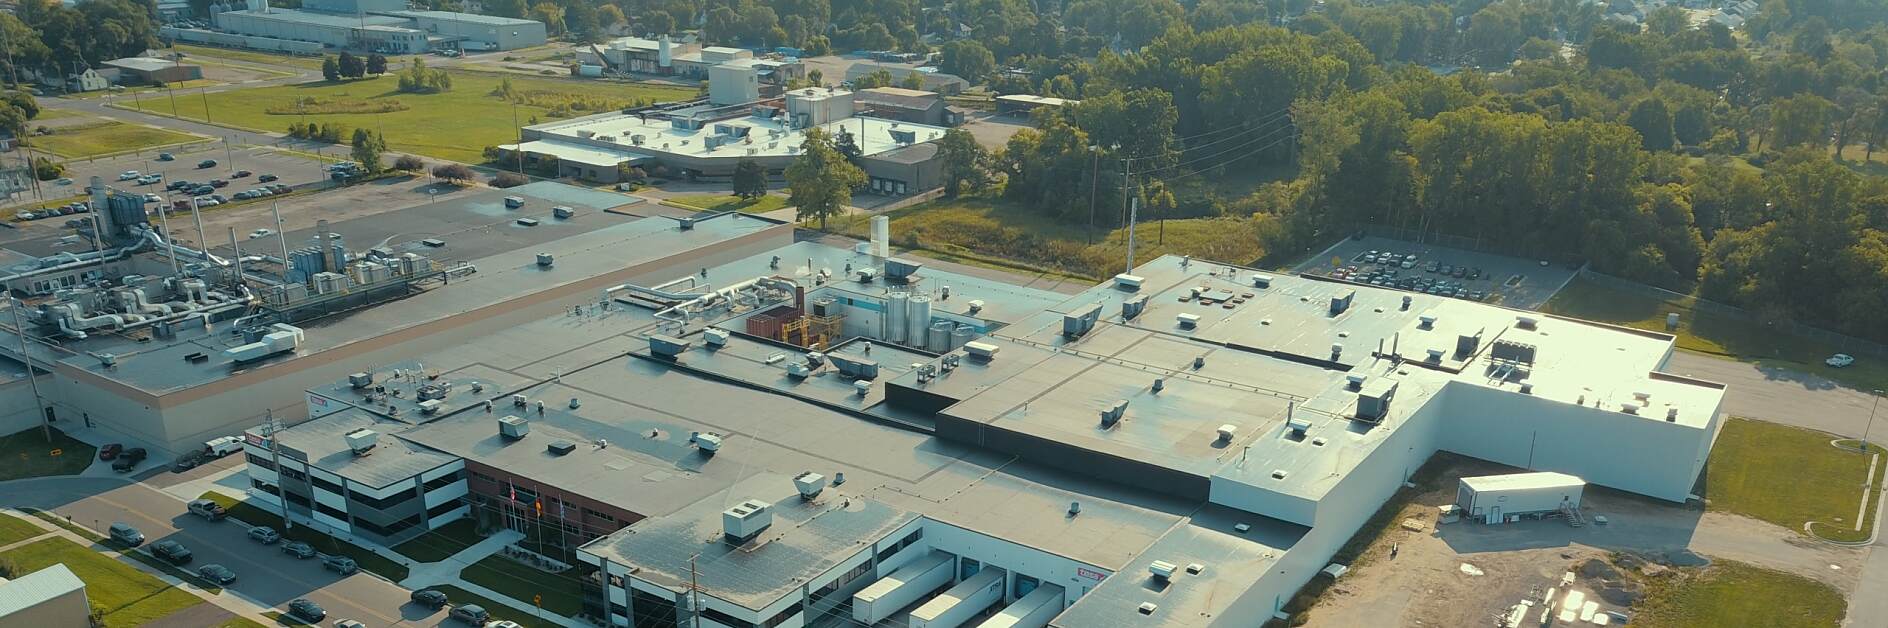 Fabrica tesa din Sparta, Michigan, S.U.A.